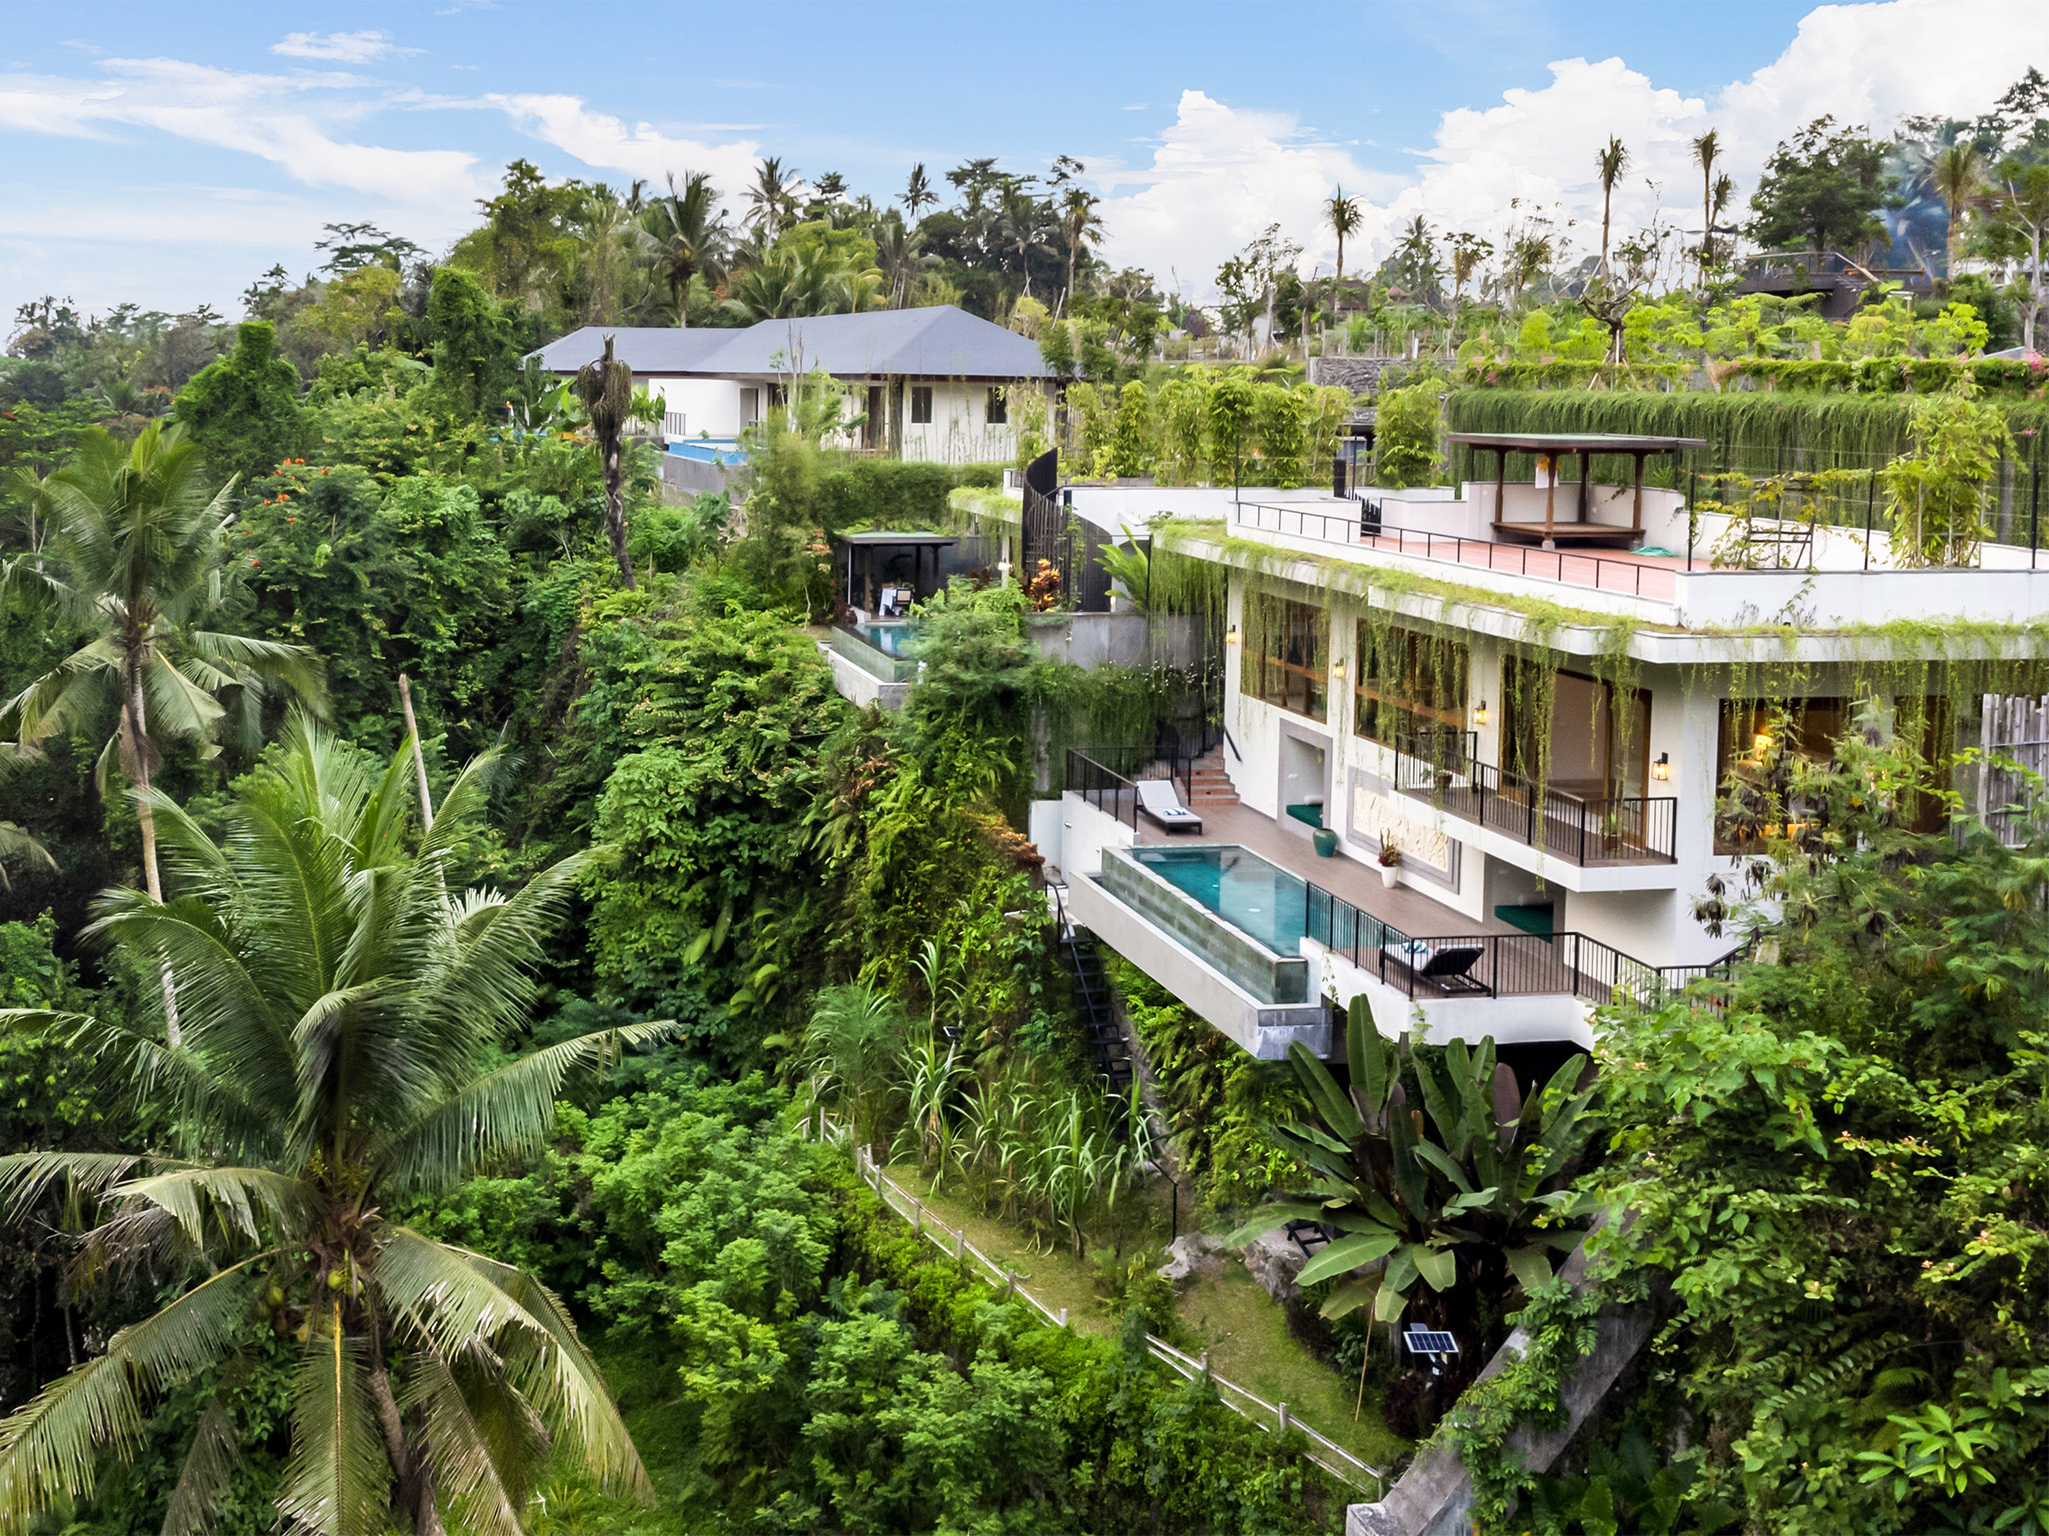 Pala Ubud - Villa Batur - Modern tropical cliff top villa